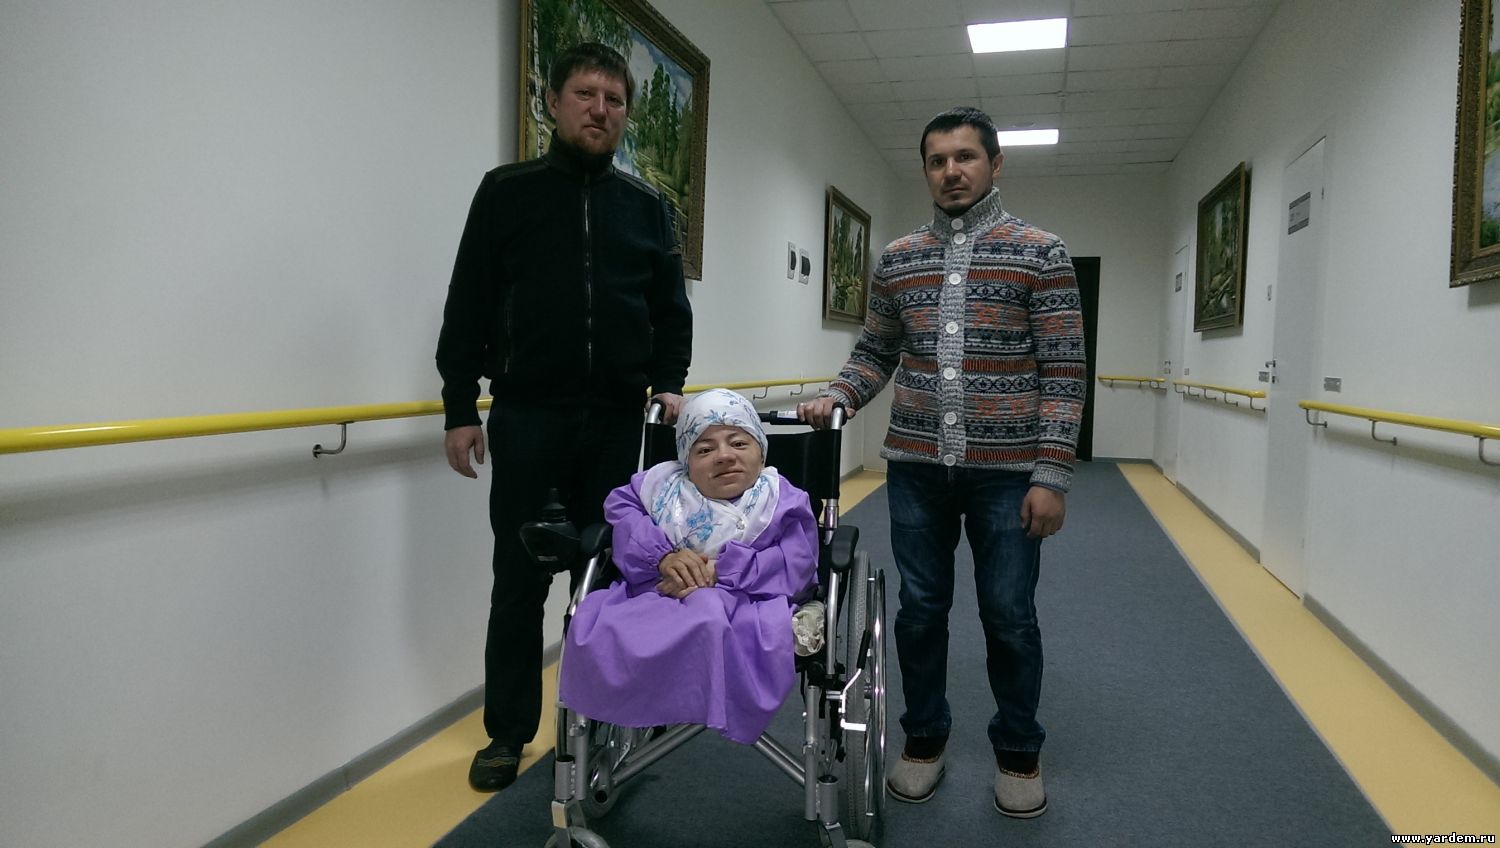 Фонд "Ярдэм" поэтессе Лилии Салахутдиновой подарила коляску. Общие новости